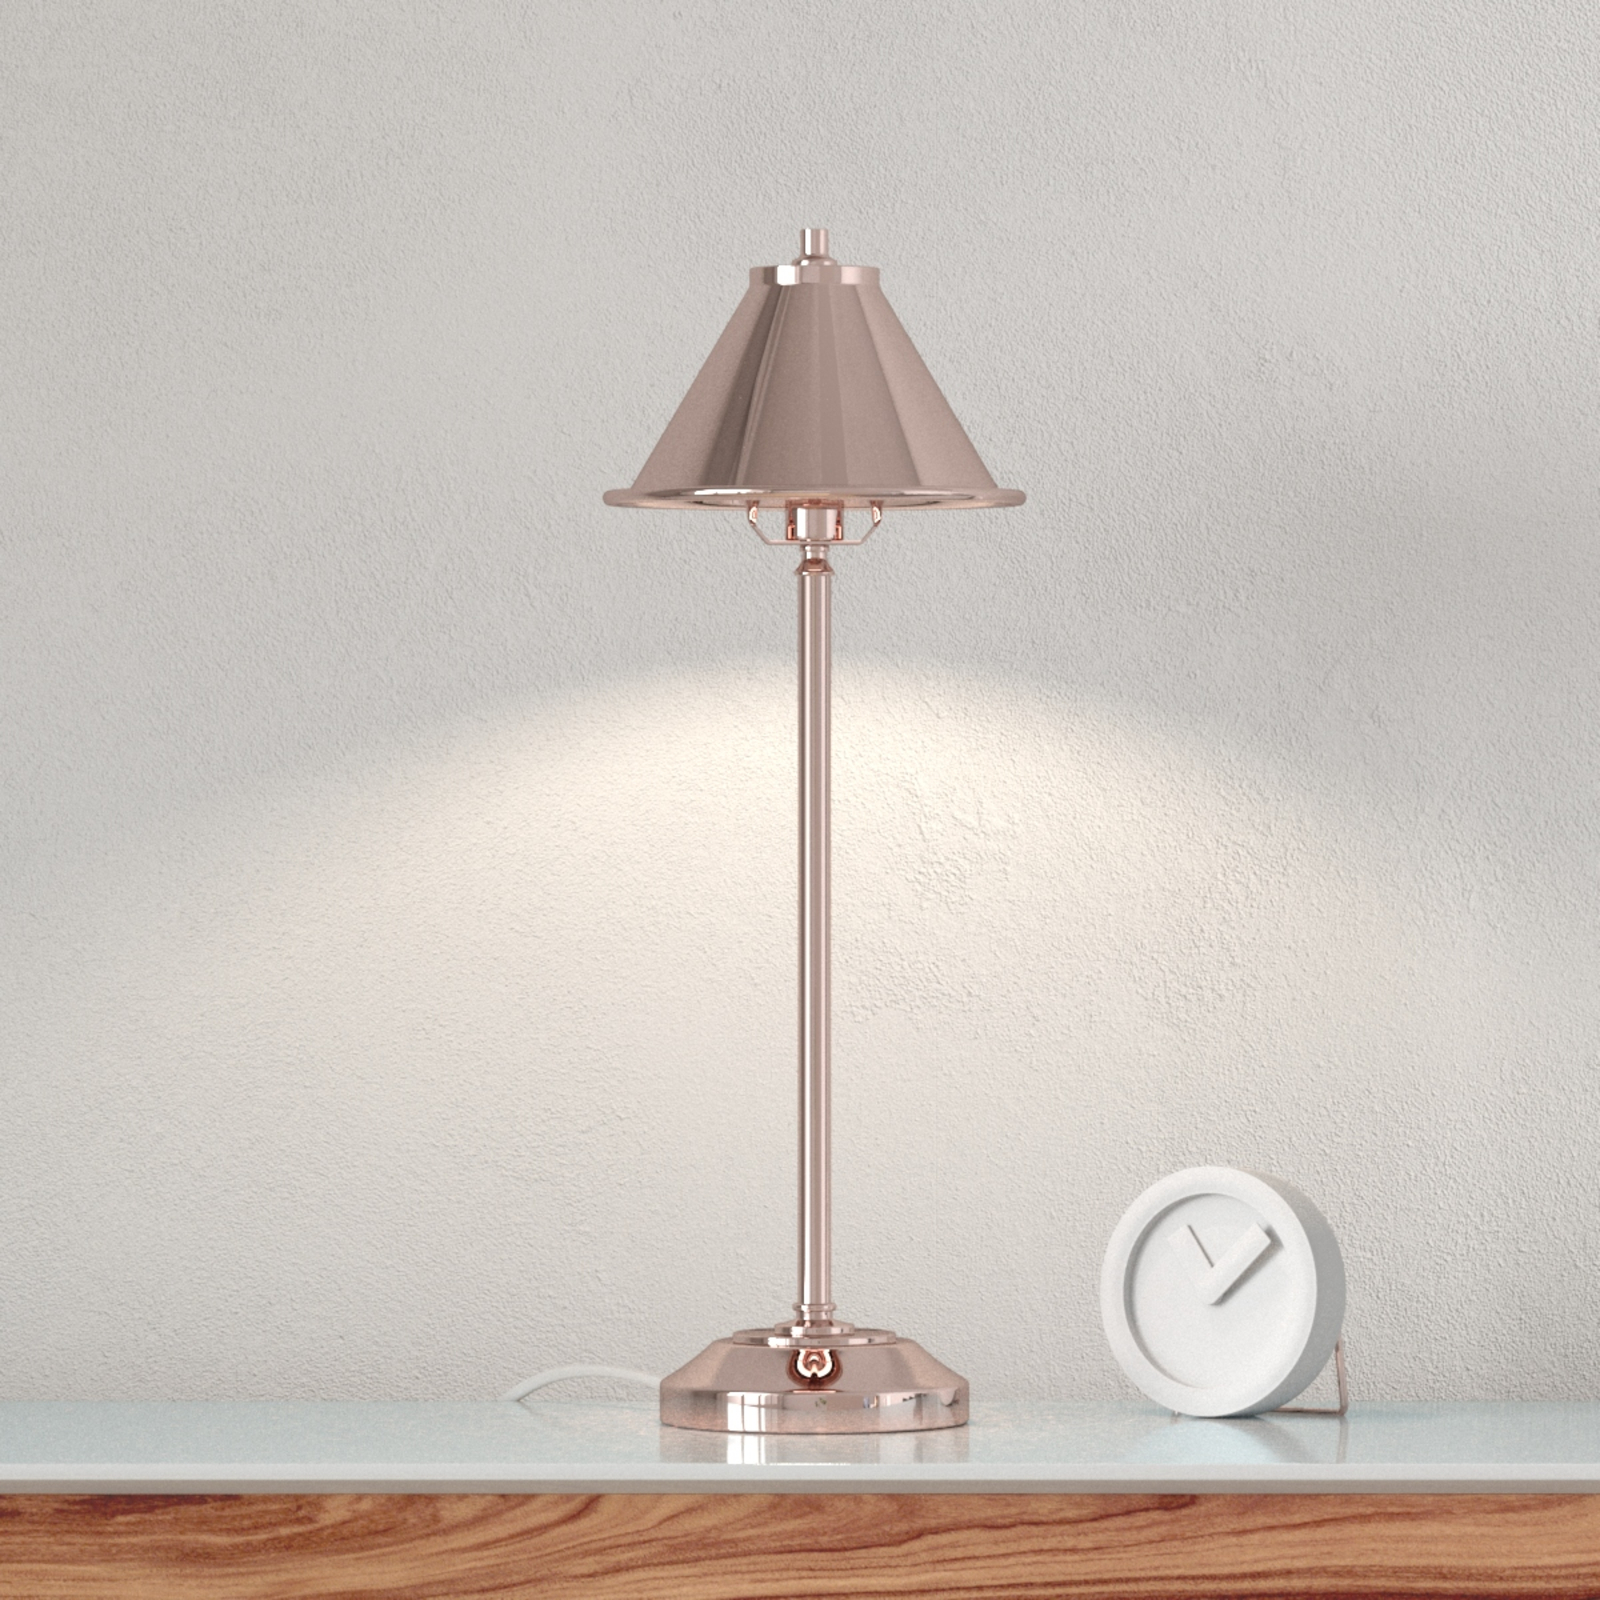 huisvrouw Wat is er mis Keuze Compacte tafellamp Provence in koper | Lampen24.be